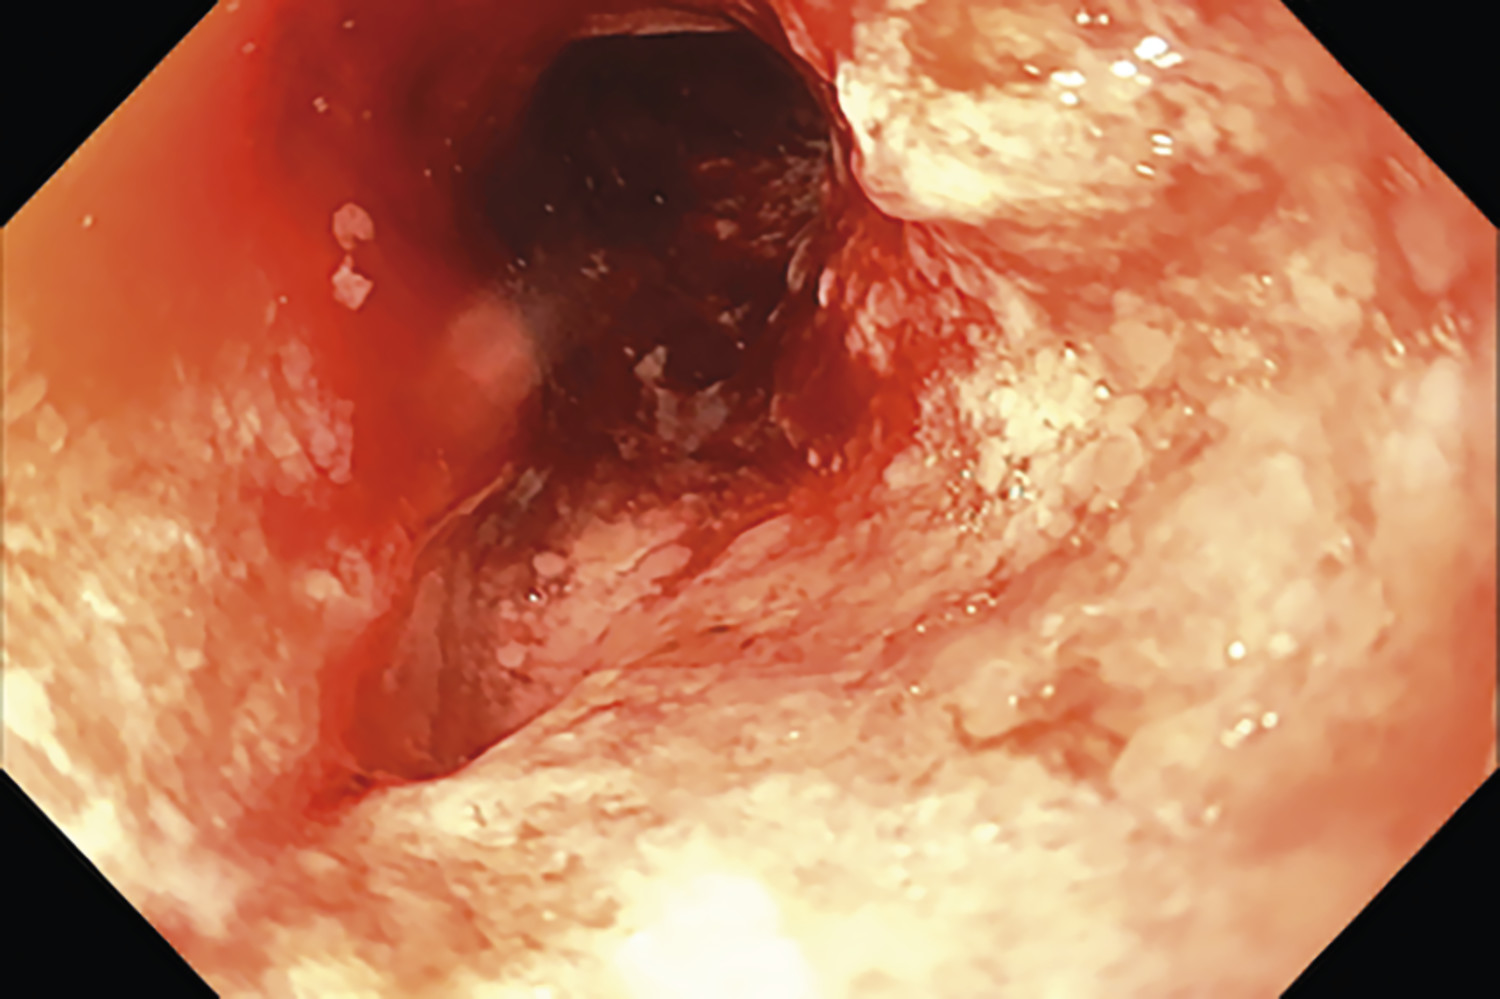 Sténose bulbaire chez une patiente atteinte de maladie de Crohn pédiatrique - Figure 2